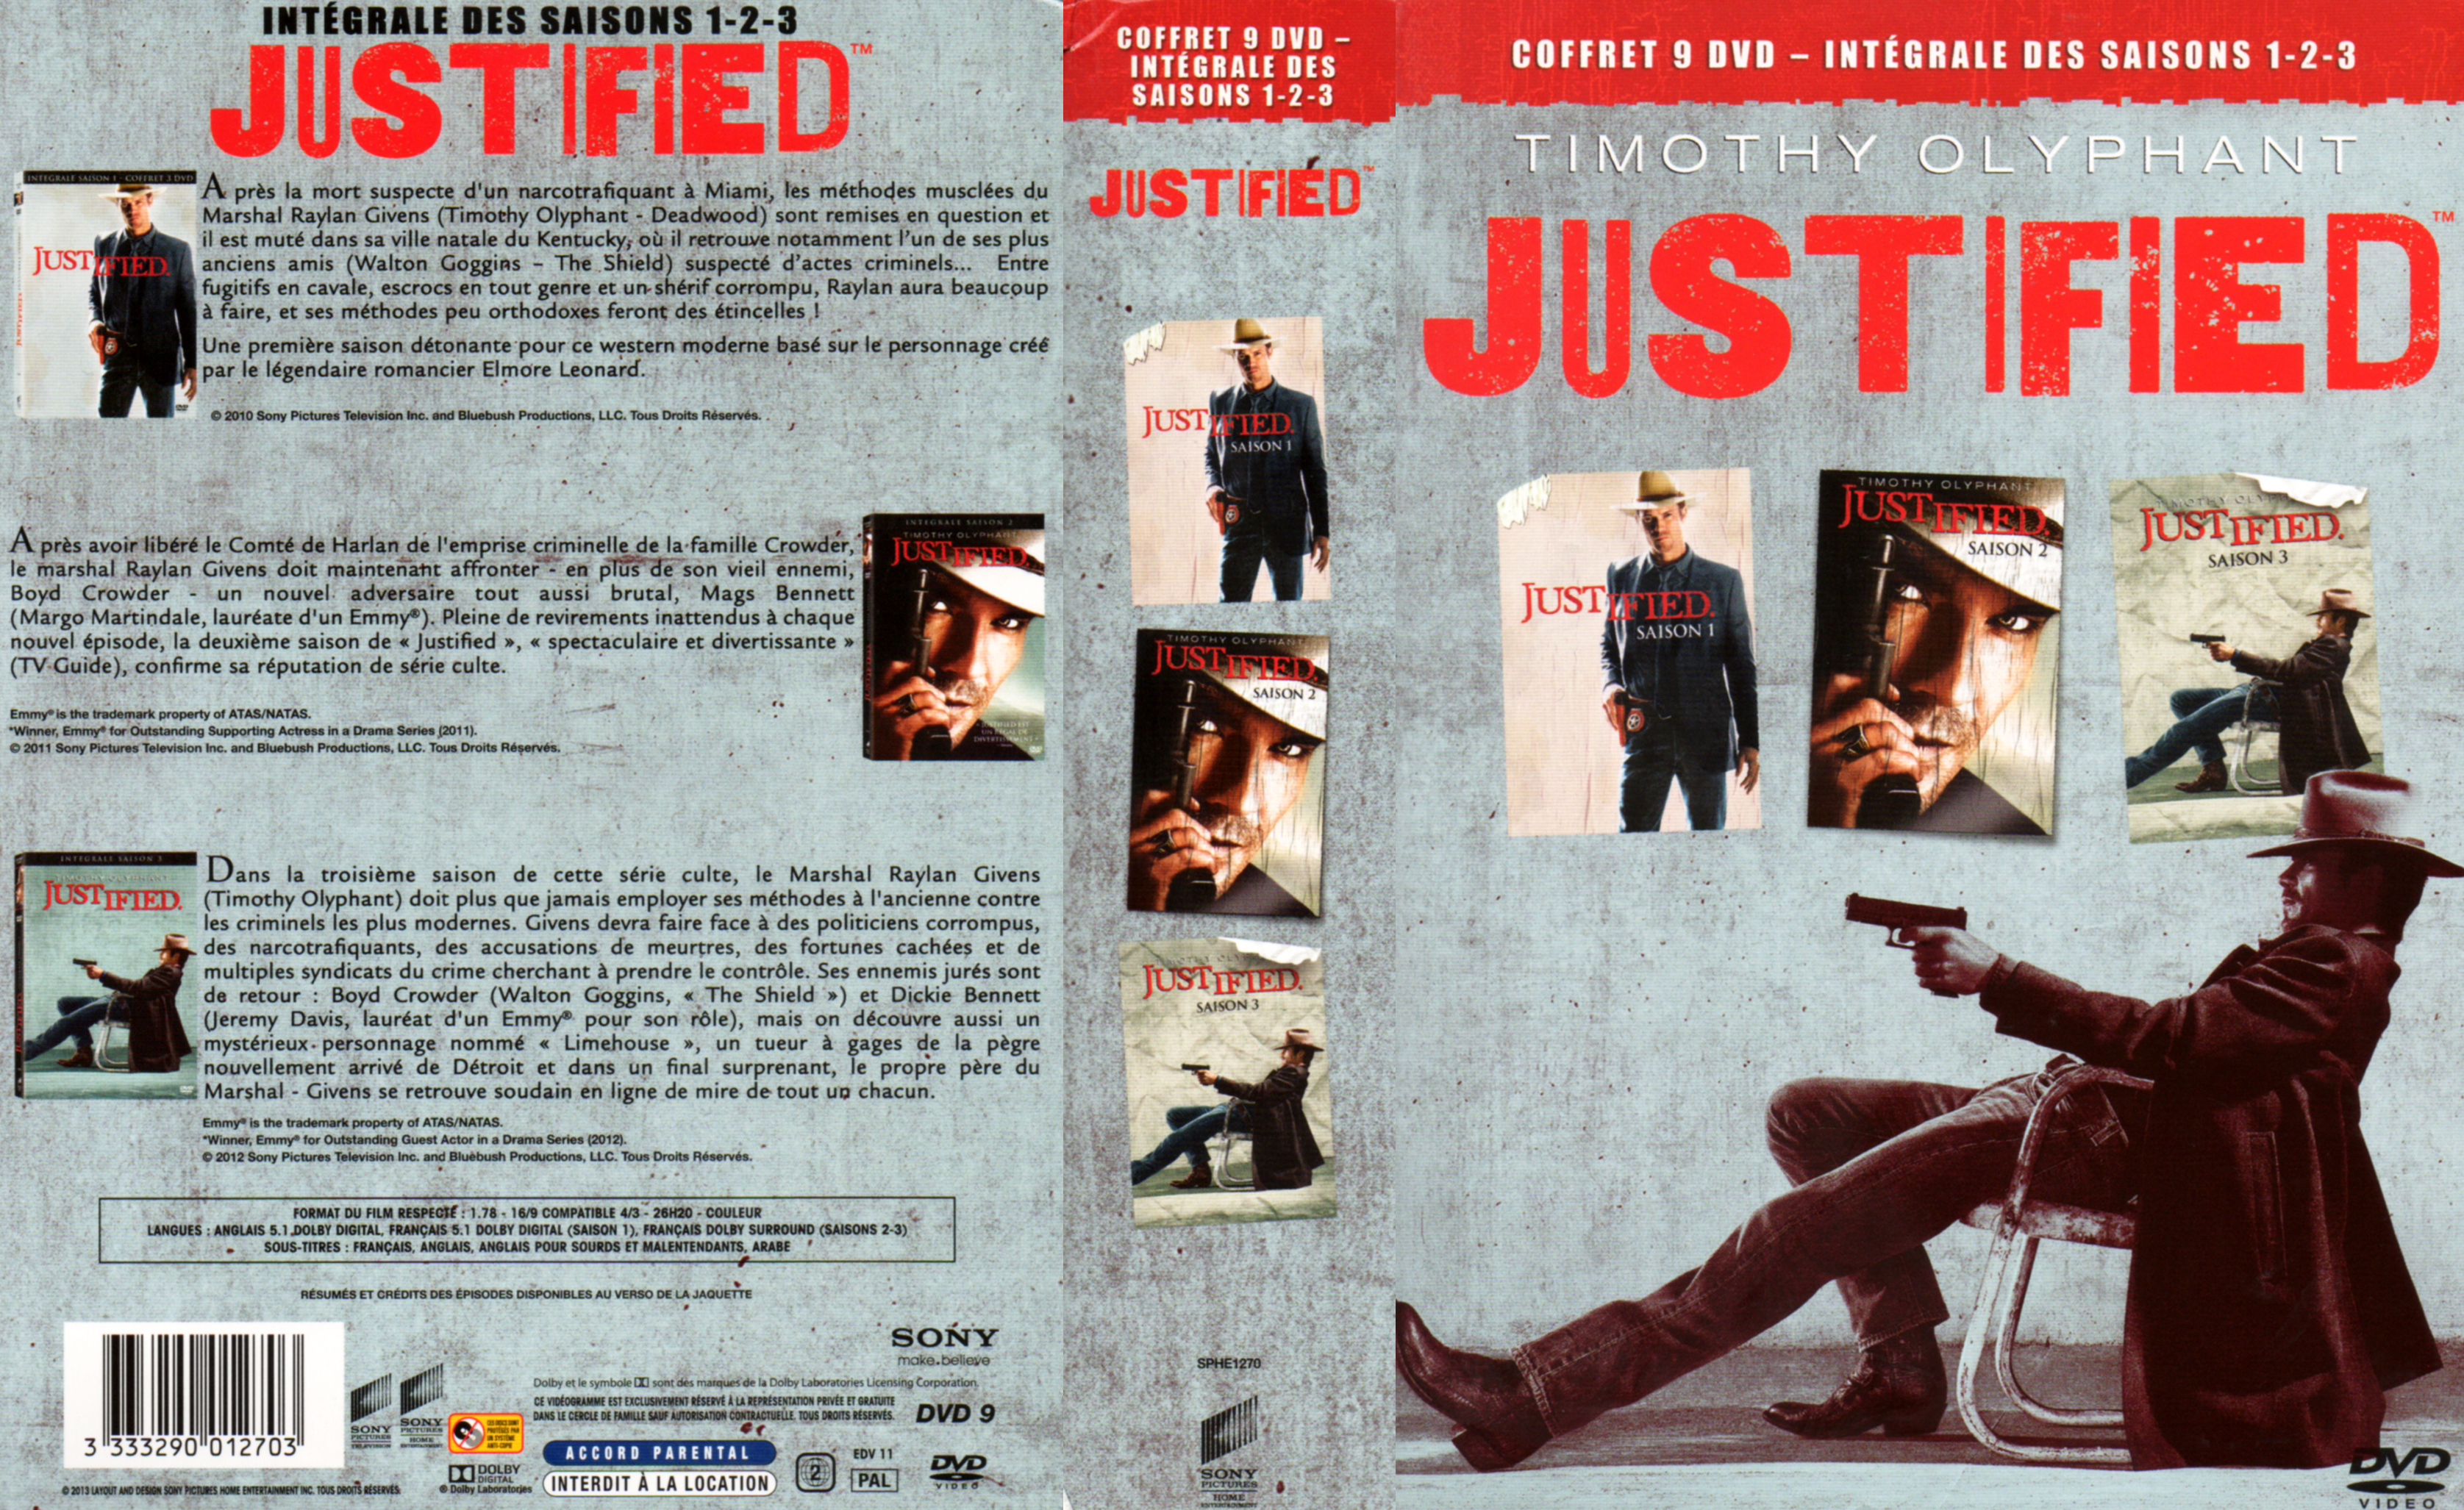 Jaquette DVD Justified Saison 1-3 COFFRET